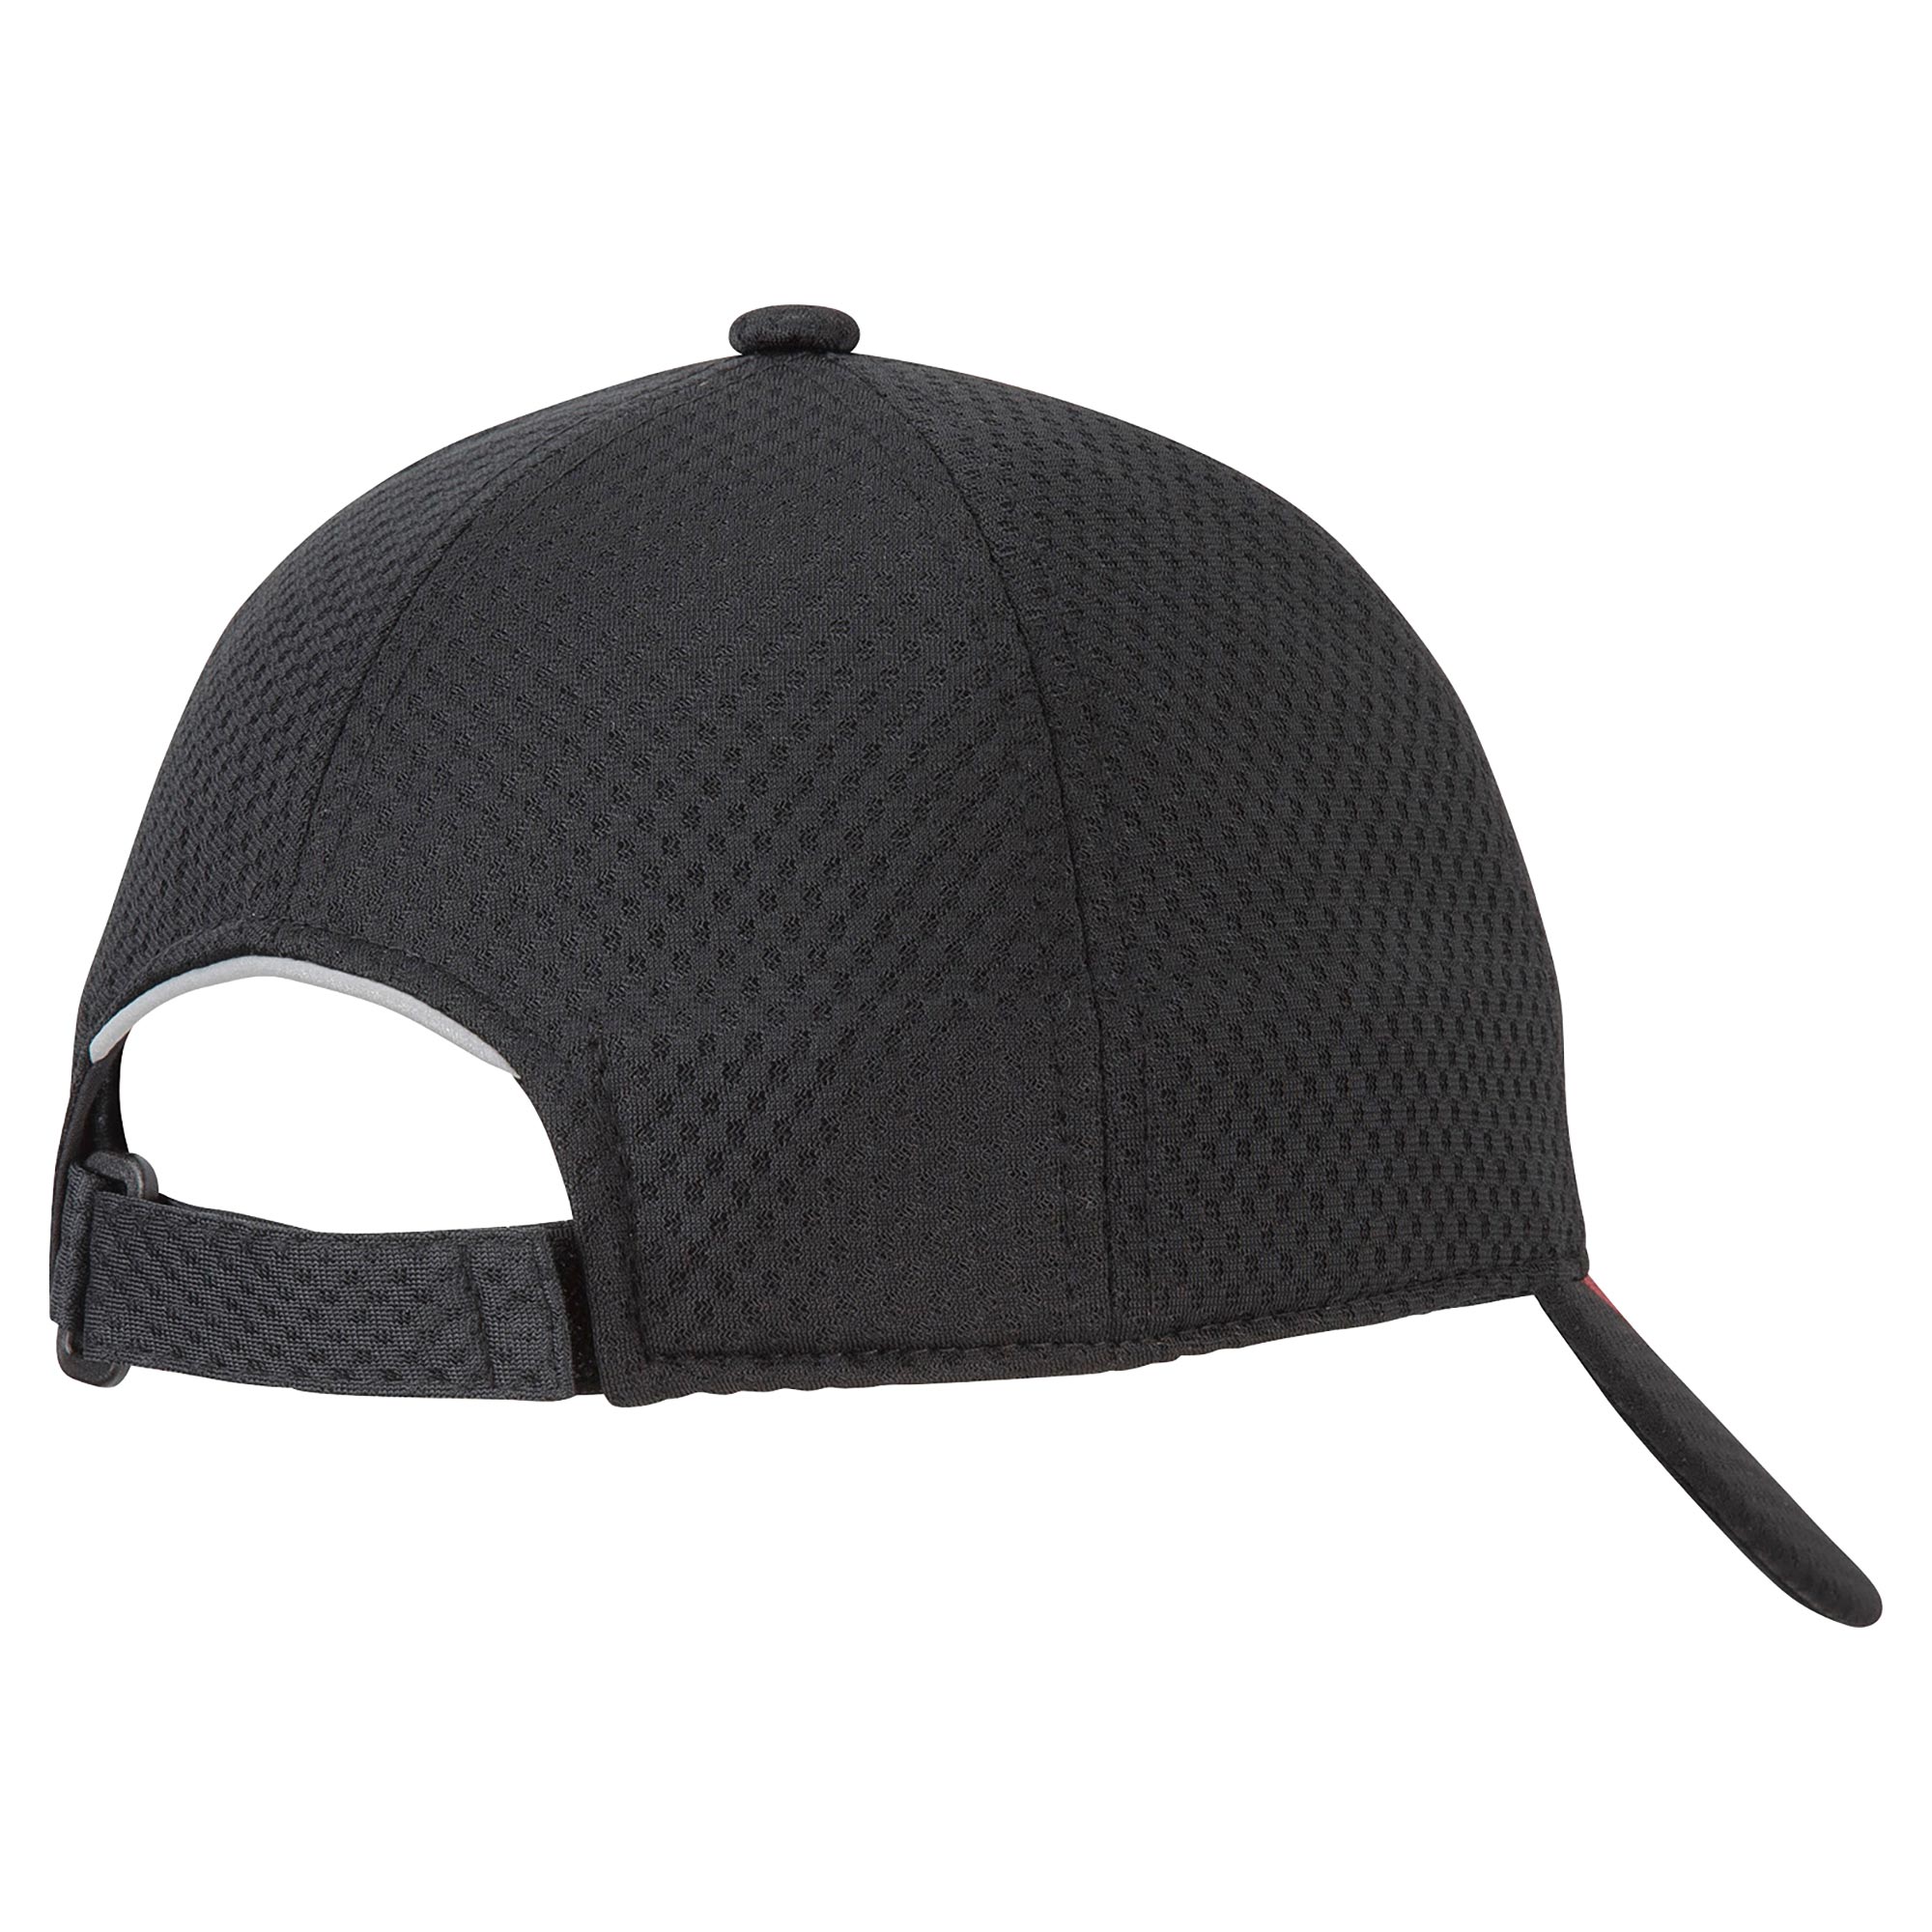 ミズノ ソーラーカットキャップ MCライン クーリング UPF50+ UV 帽子